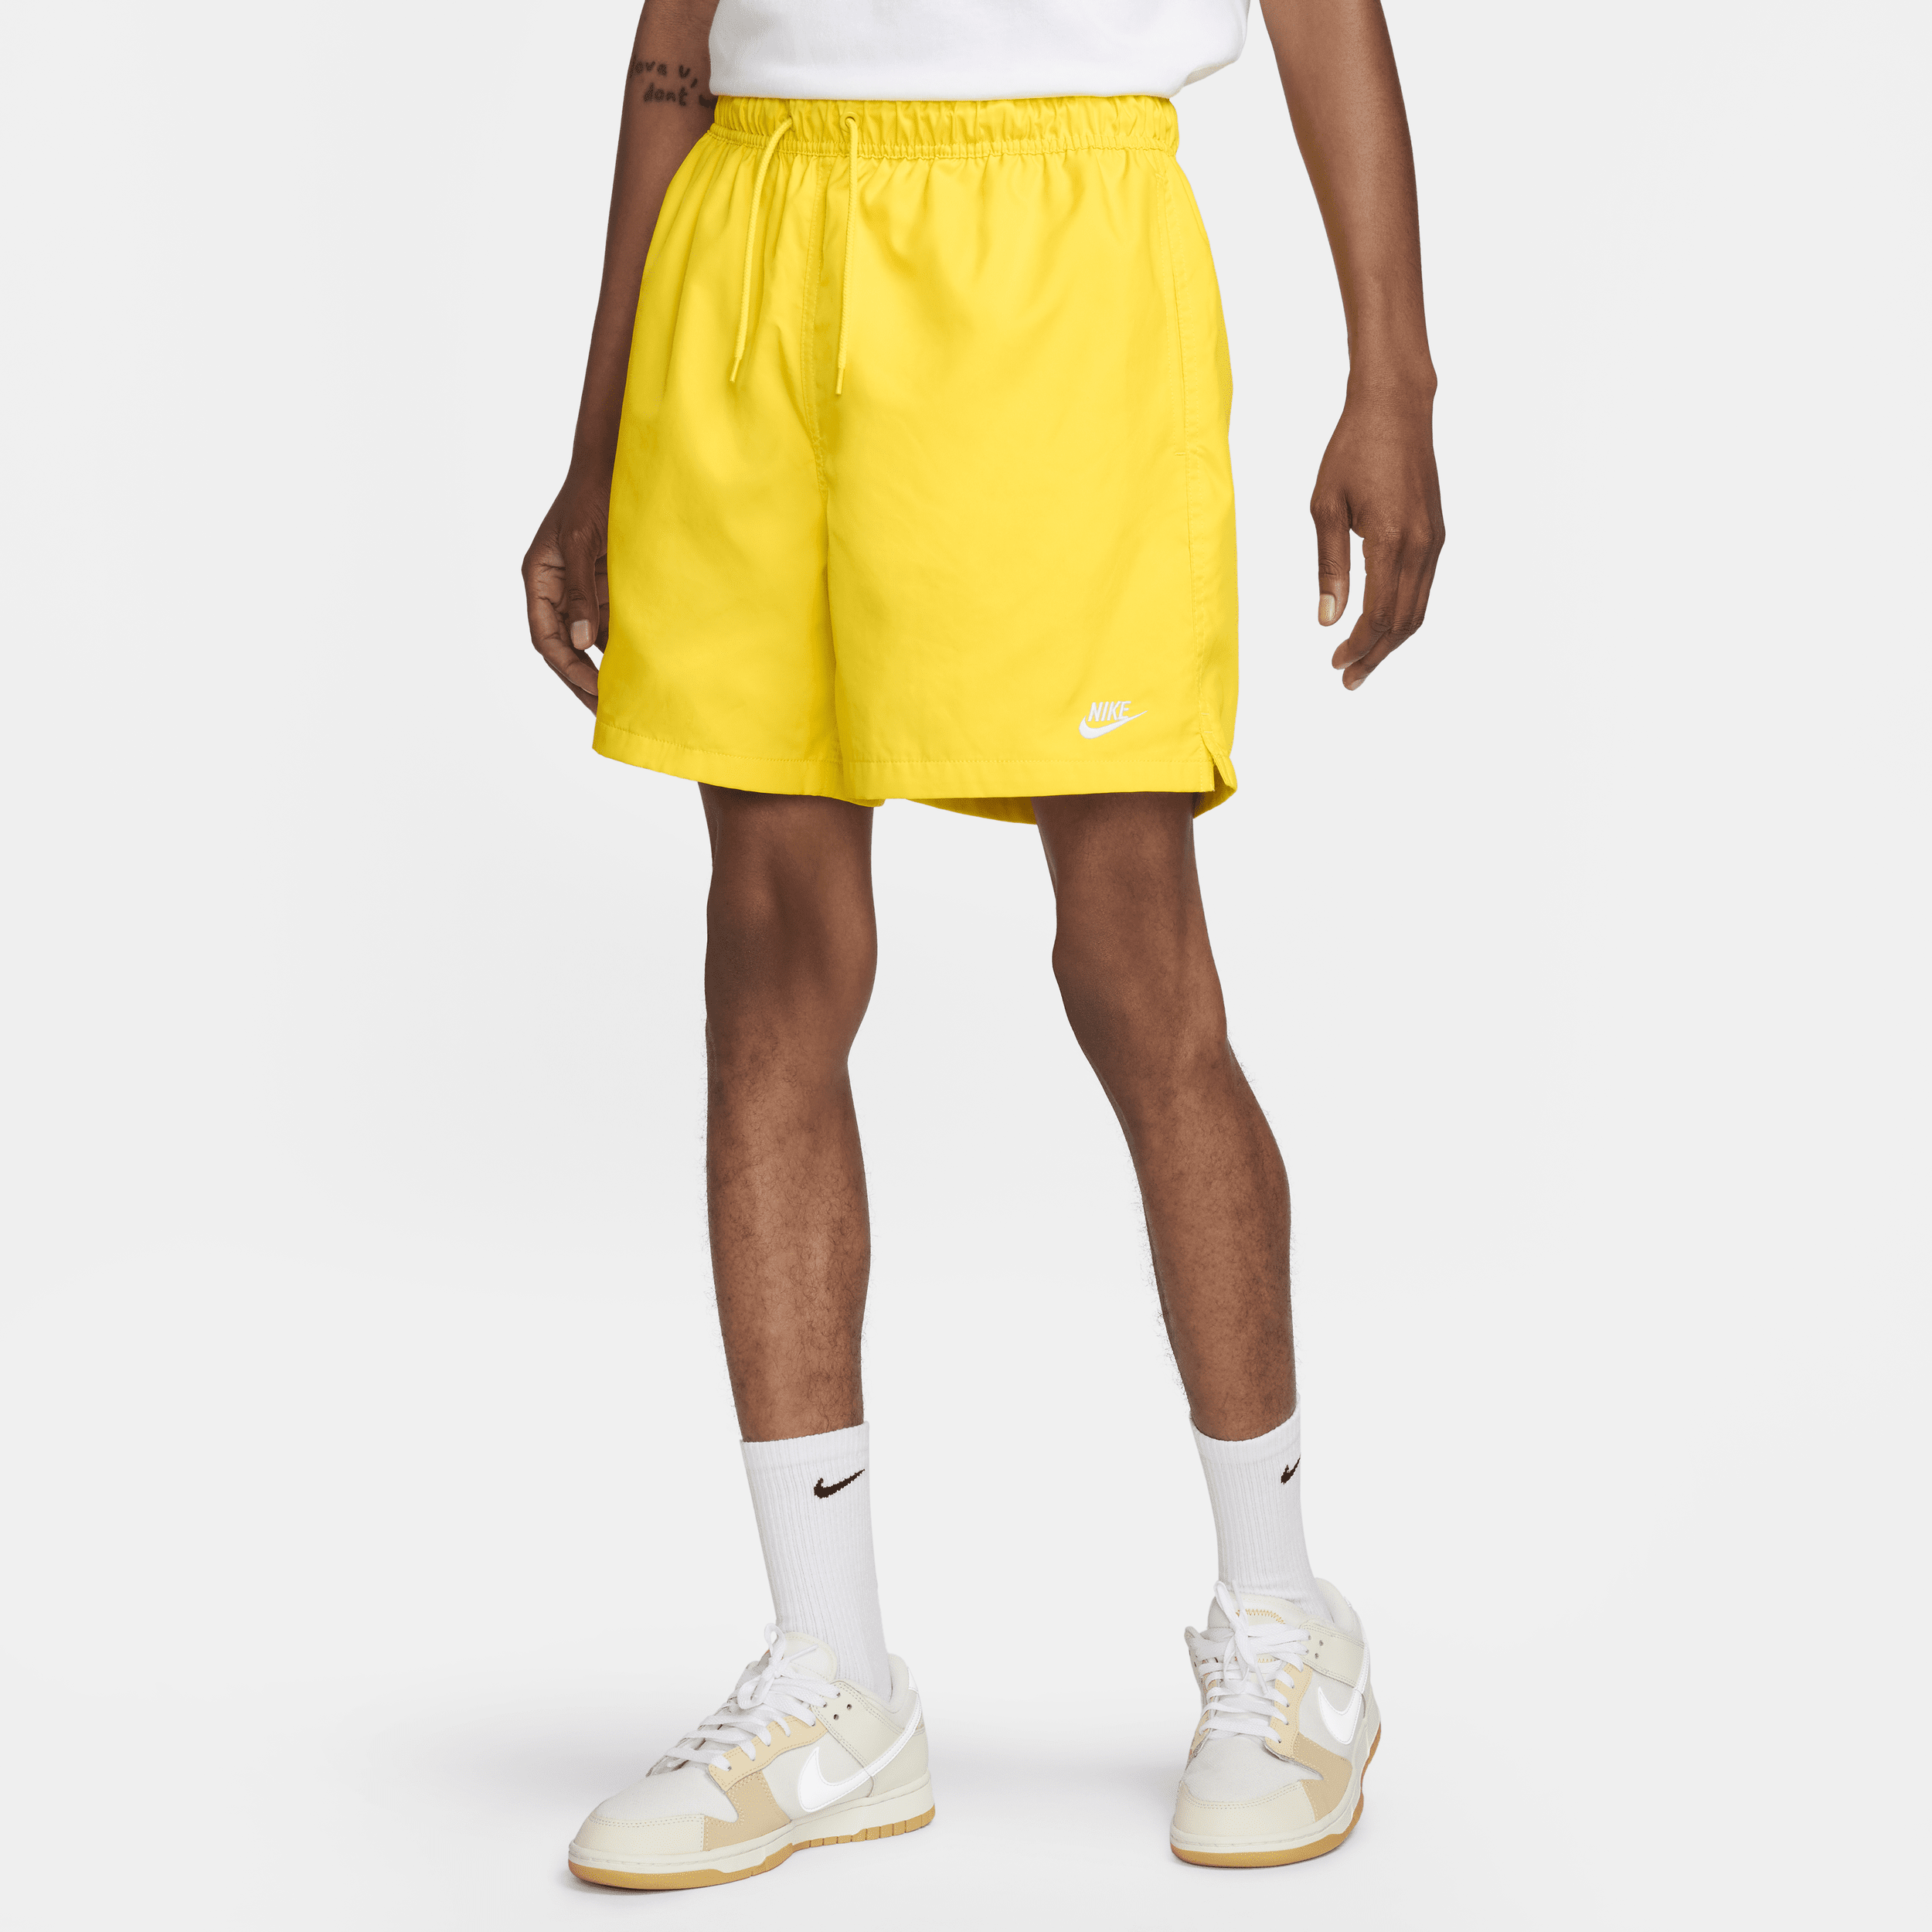 Shorts Flow in tessuto Nike Club – Uomo - Giallo